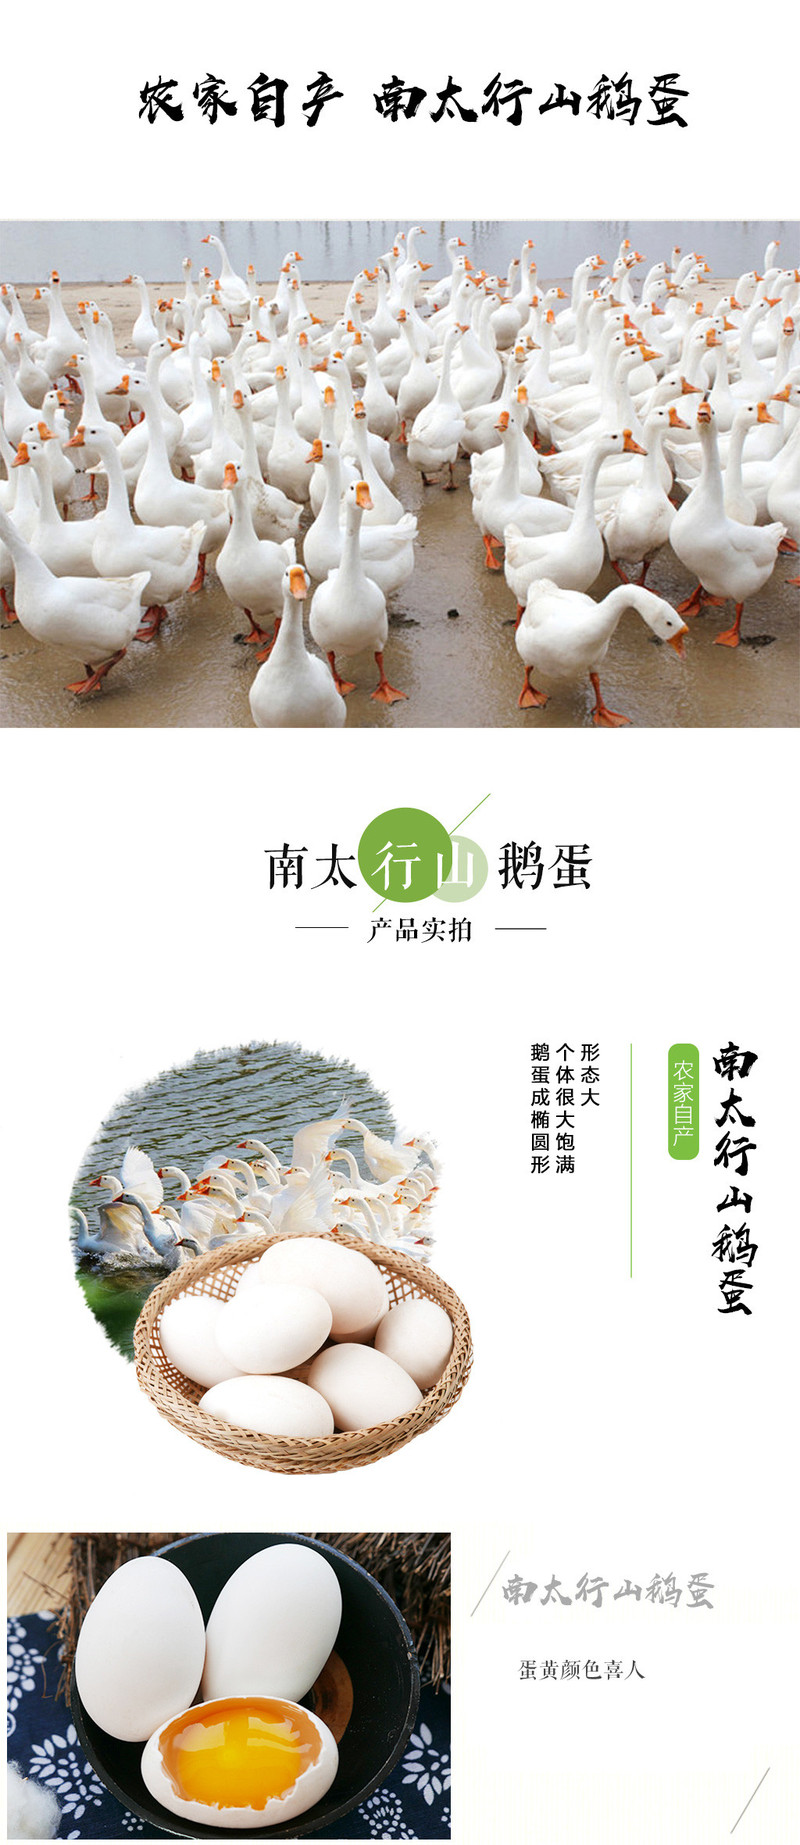 农家自产 南太行山鹅蛋农家散养新鲜大鹅蛋12枚  100-120g/个 新鲜的生鹅蛋